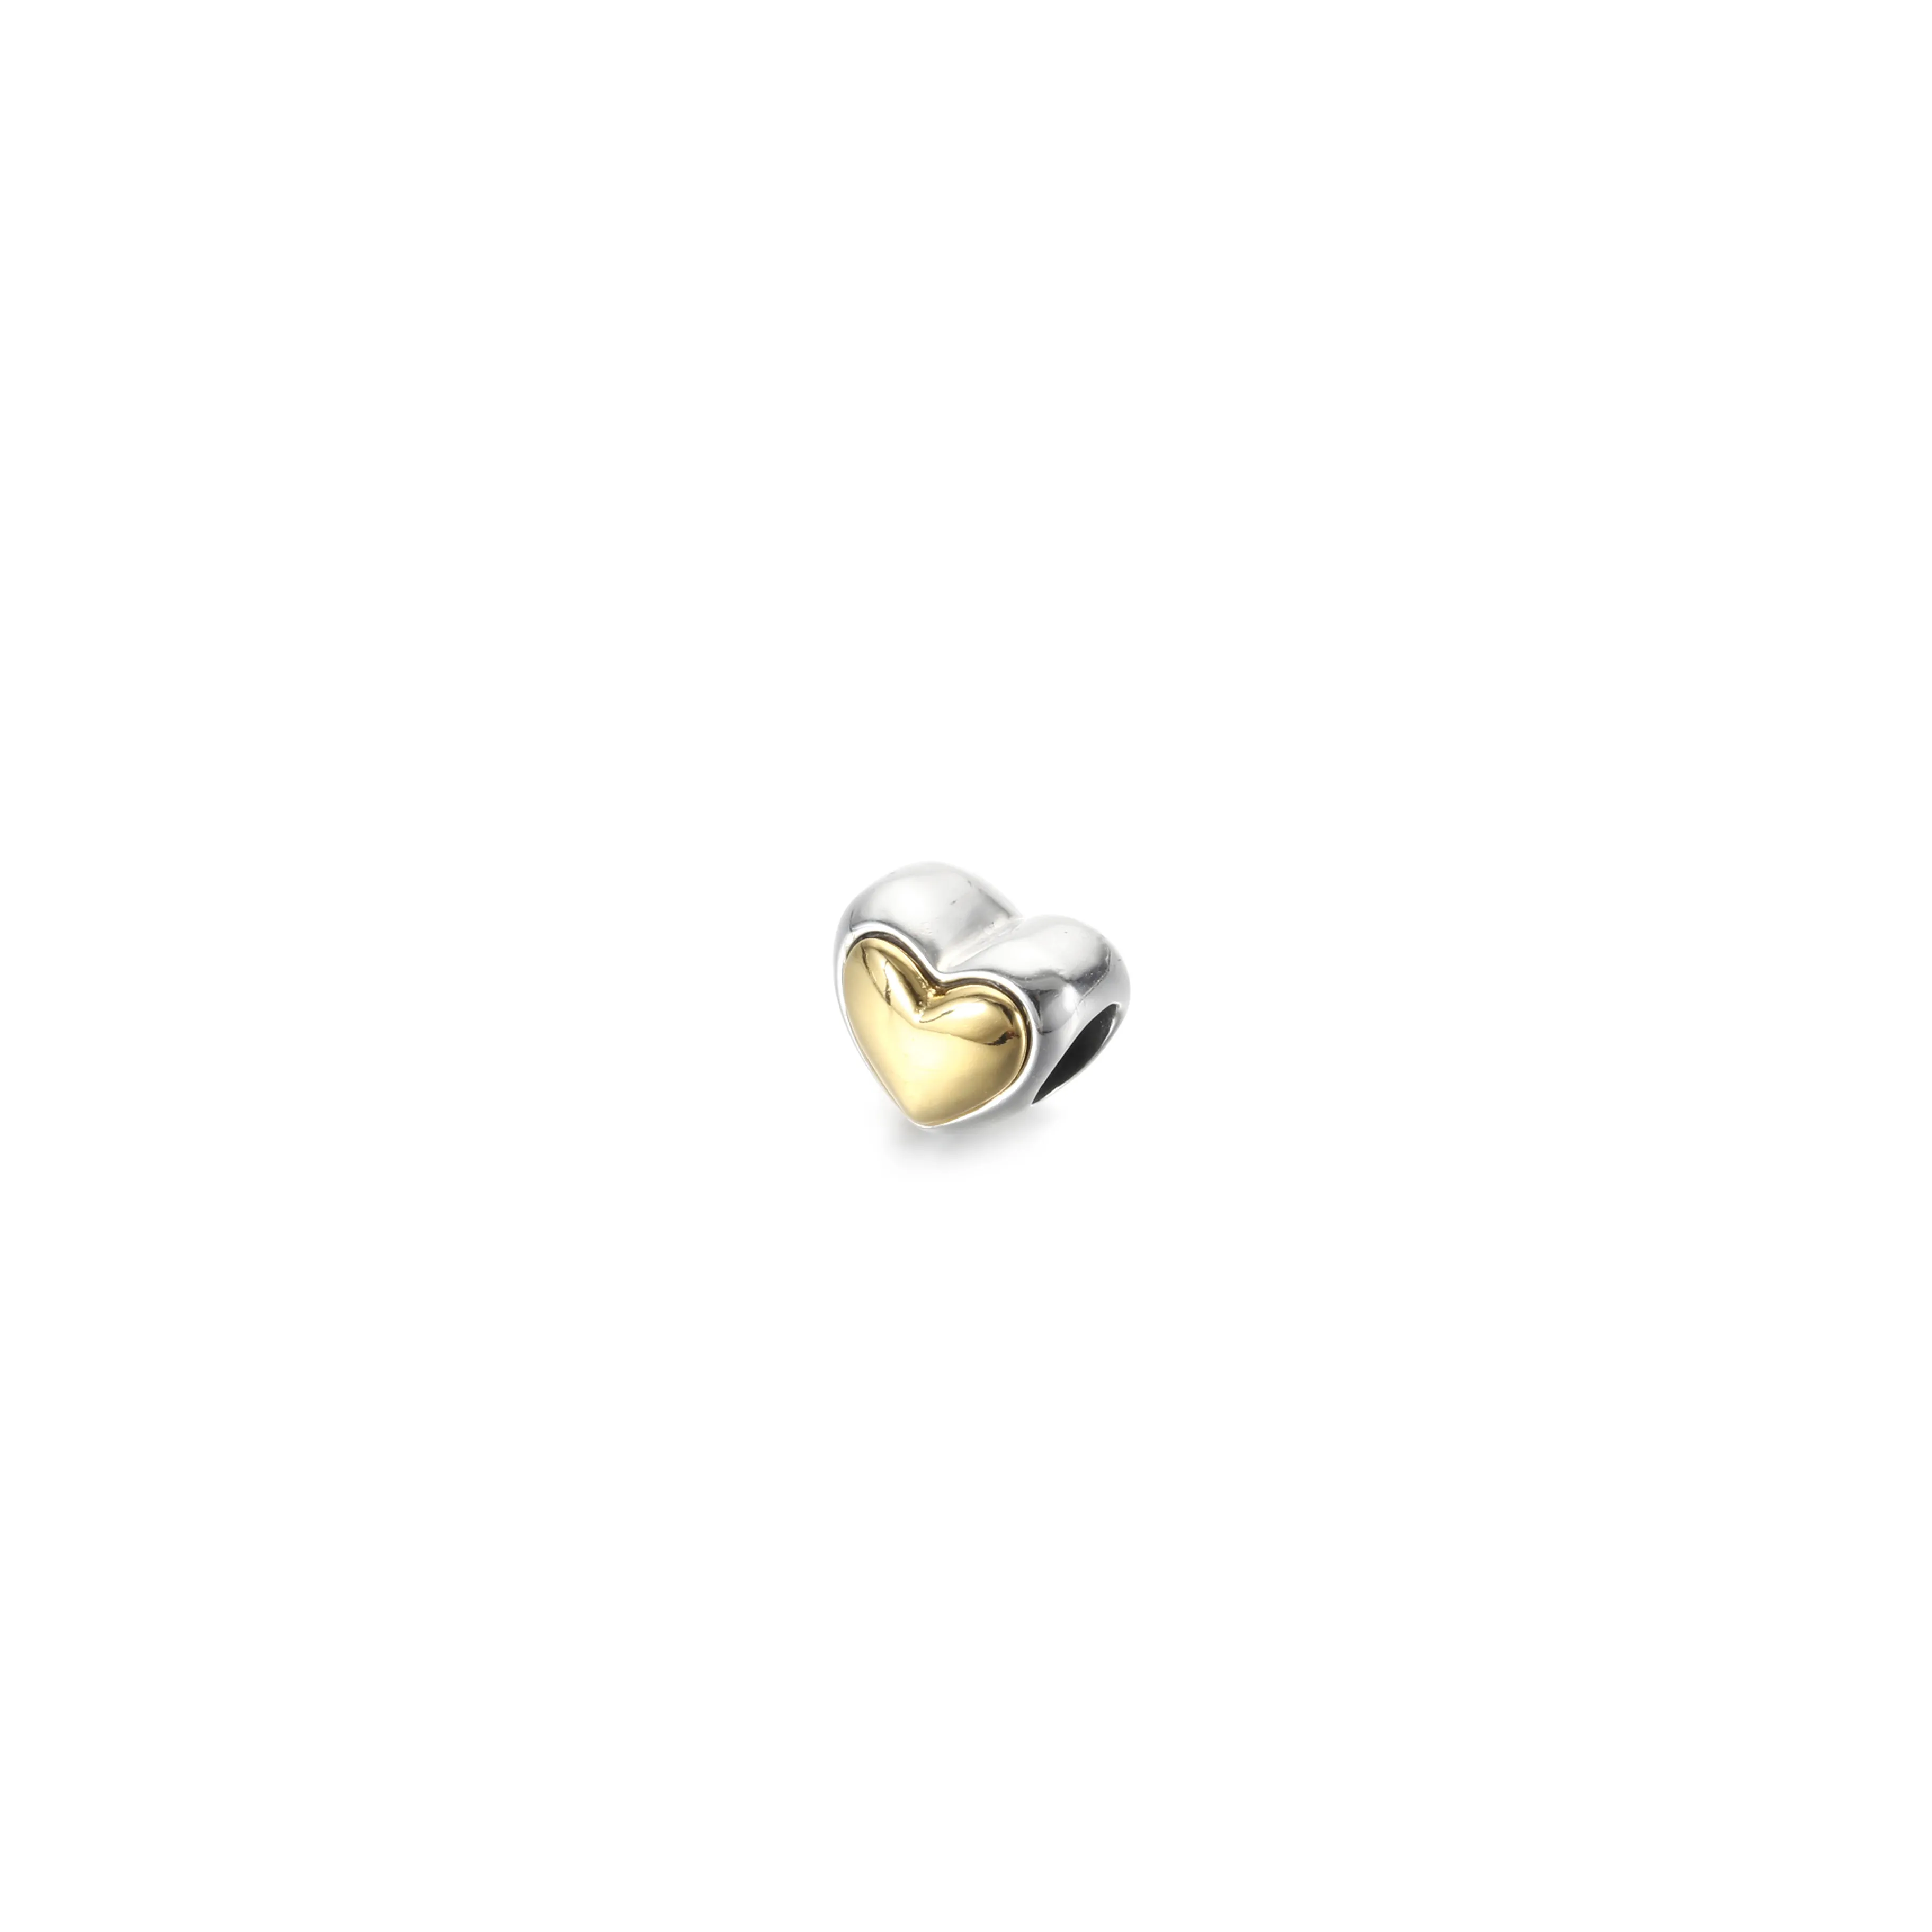 Breloc PANDORA cu inimă aurie în formă de cupolă - 799415C00